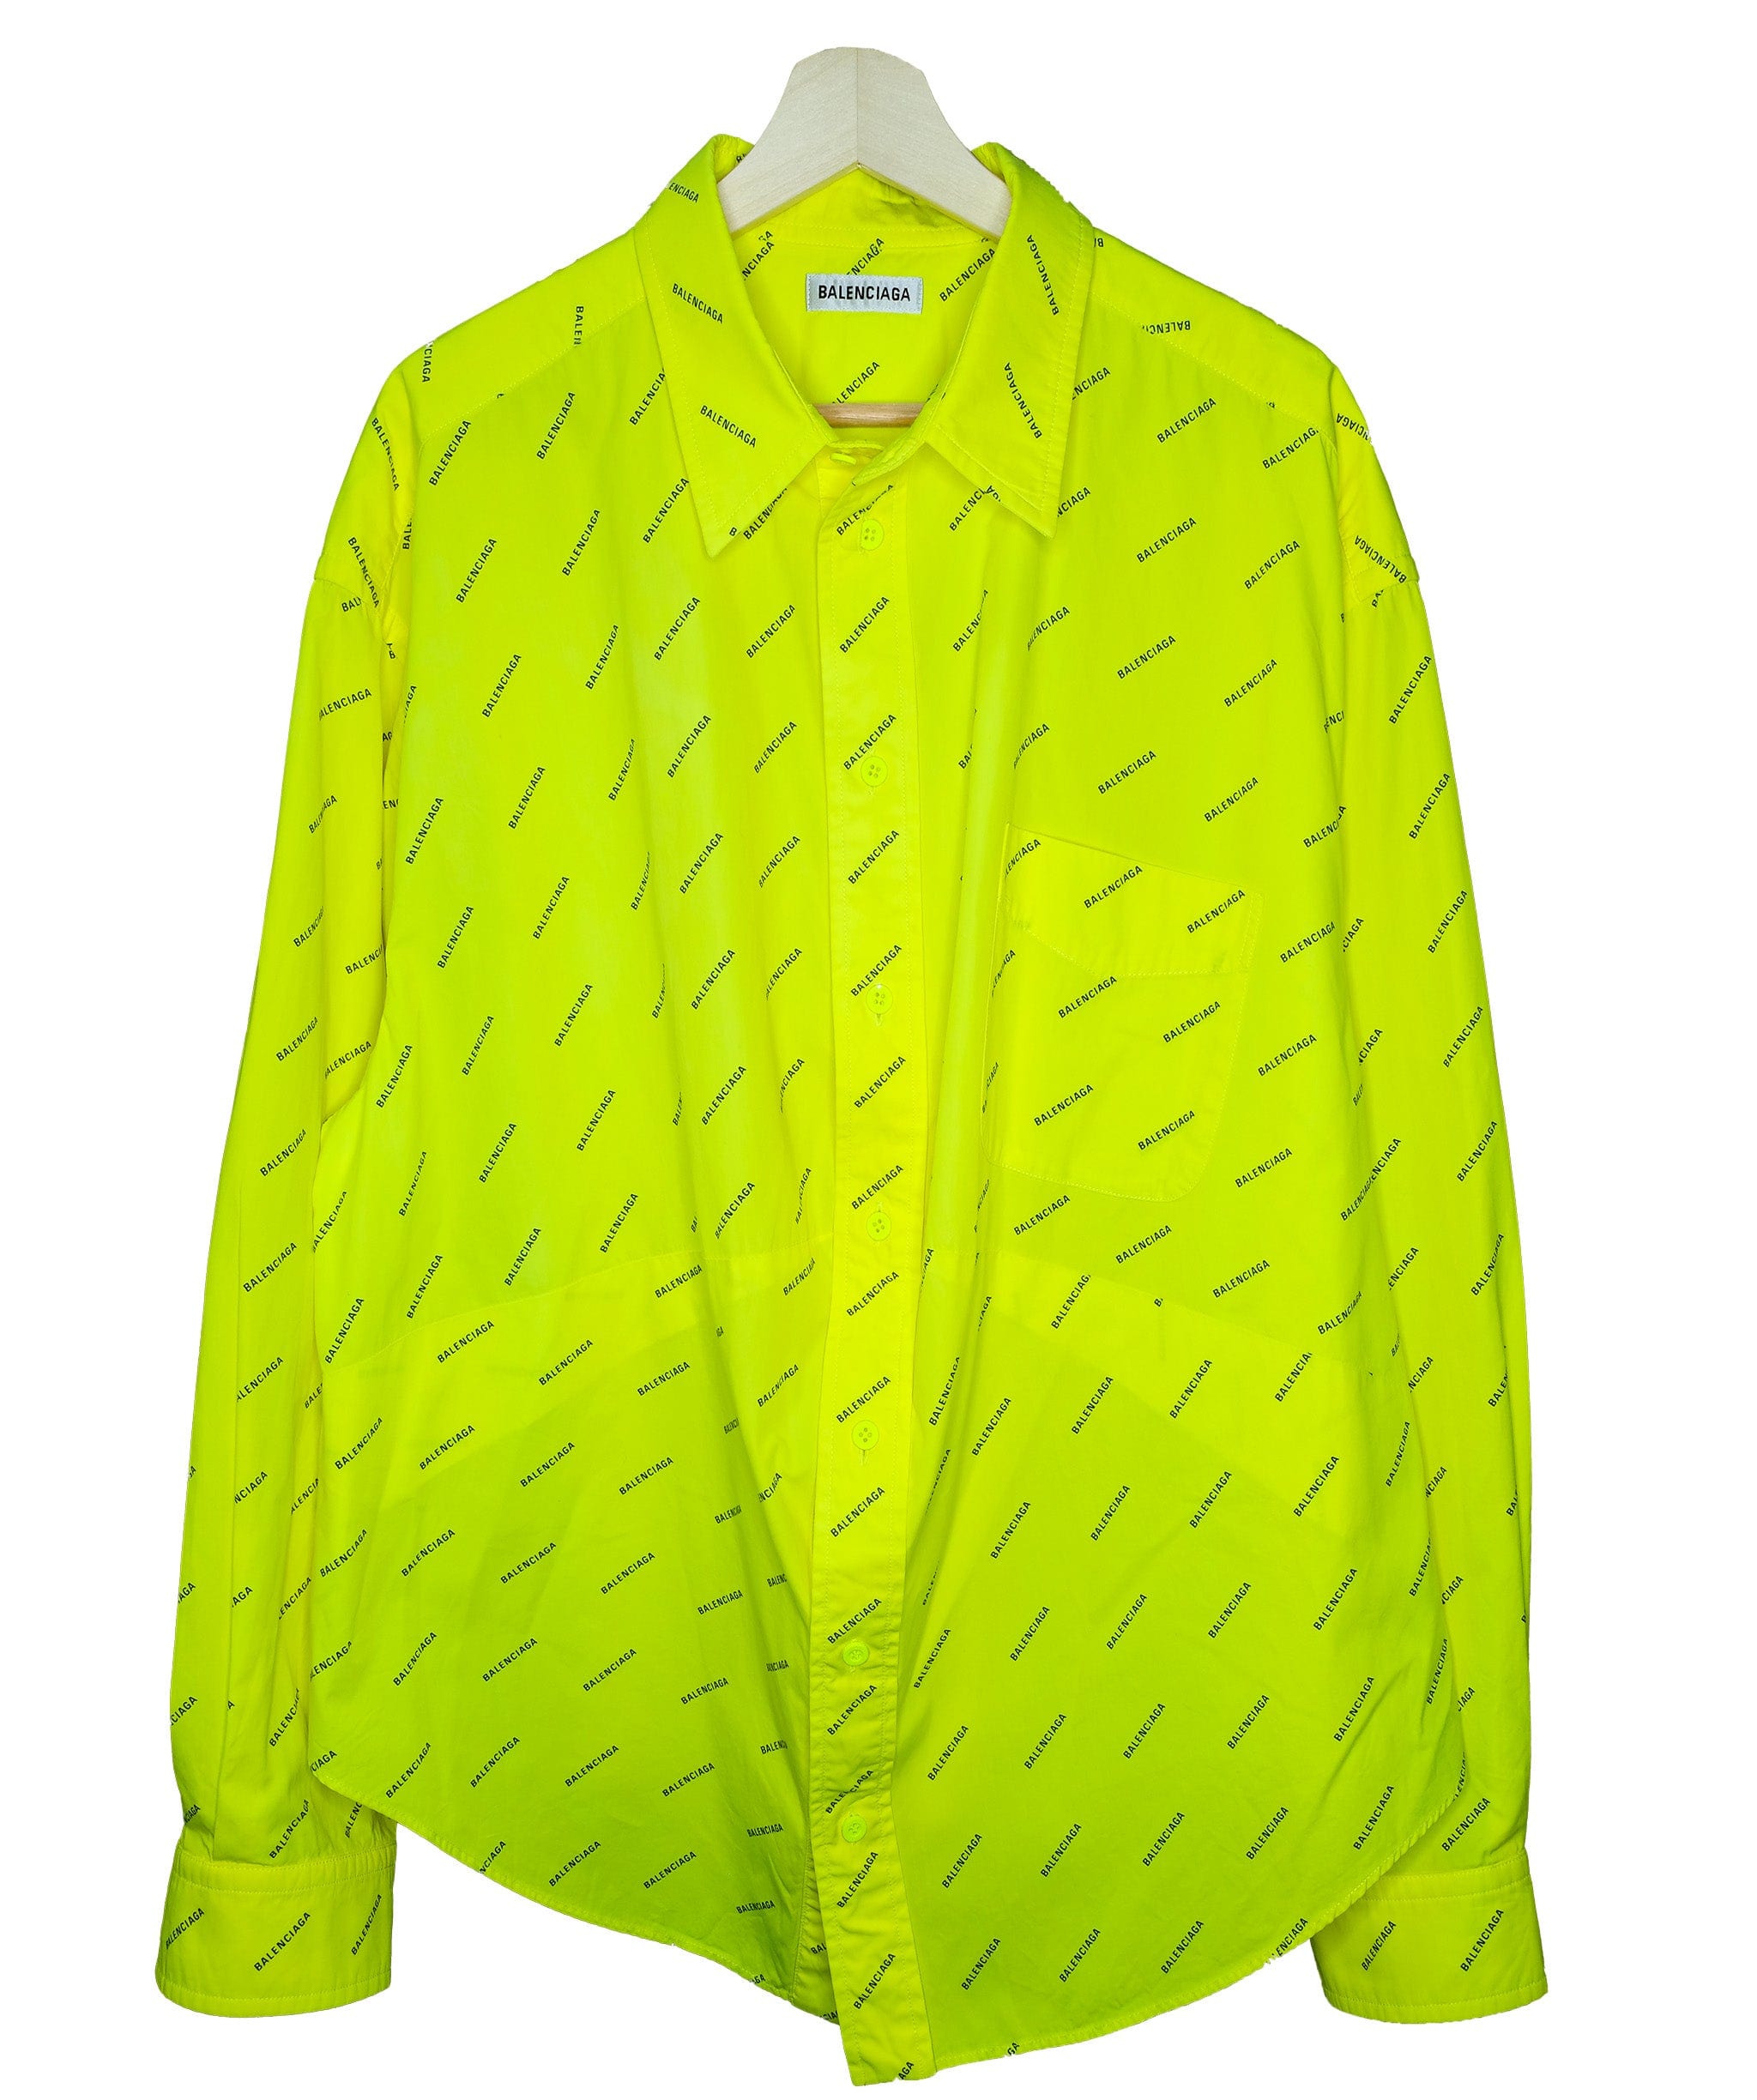 Balenciaga Balenciaga Neon Yellow Shirt RJC1433